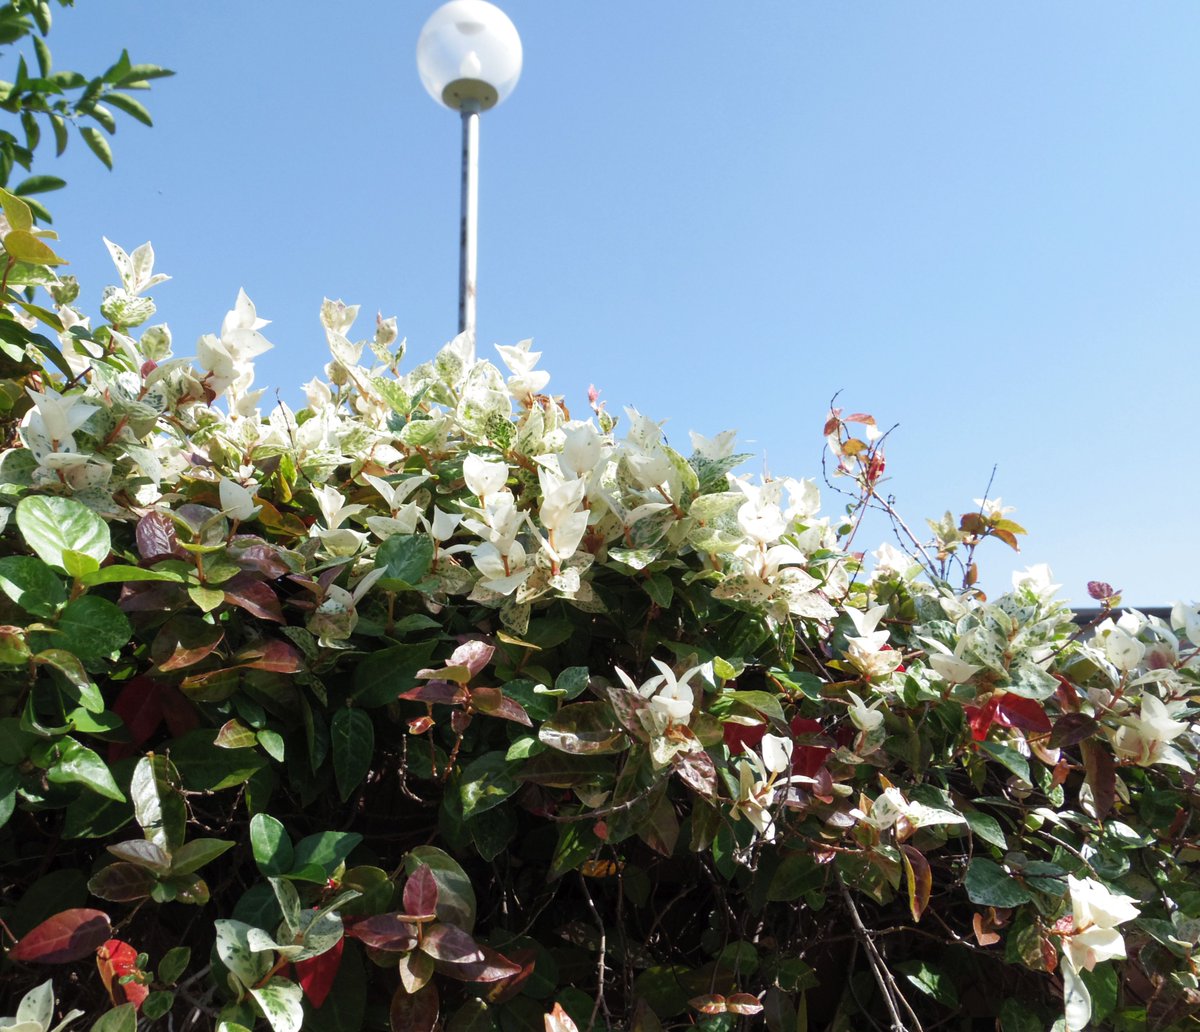 こころんグリーン على تويتر 幼稚園の花壇にハツユキカズラが植えてありました 白い葉っぱがとても綺麗です 株の上の方が全て白っぽくなってます ハツユキカズラ 白い葉っぱ 花壇 初秋の花 初秋 園芸品種 園芸 ガーデニング 熊本市南区 熊本 T